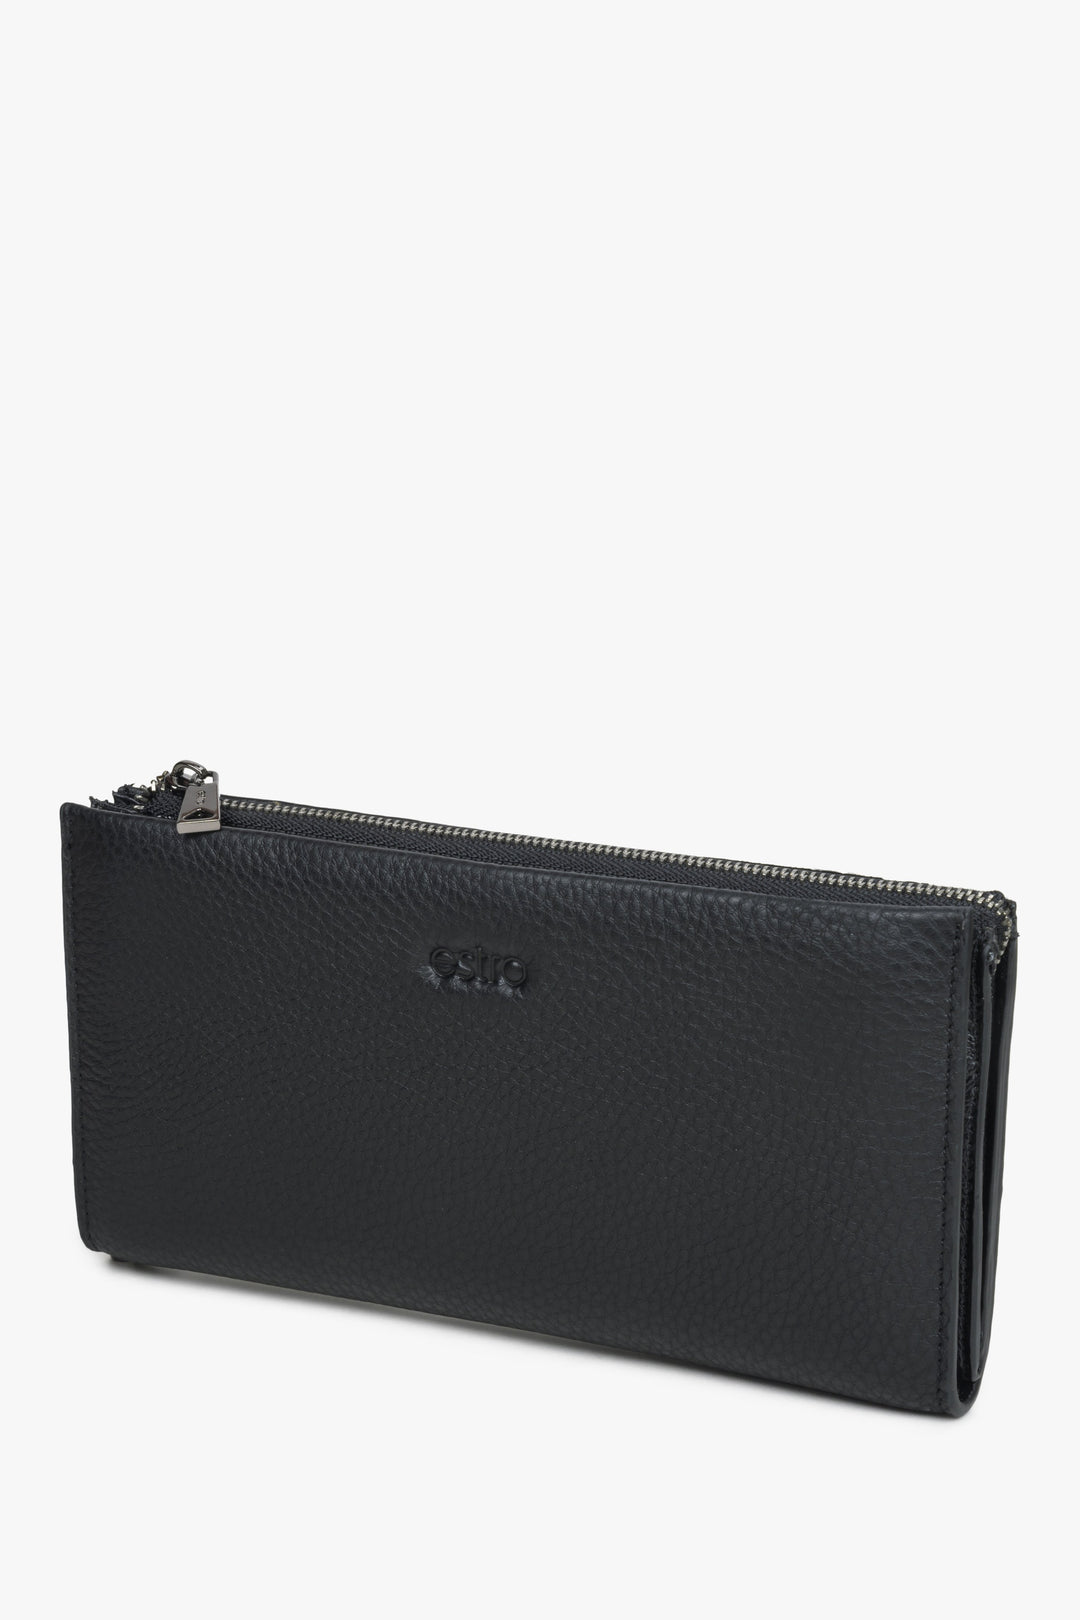 Large black leather men's wallet by Estro.